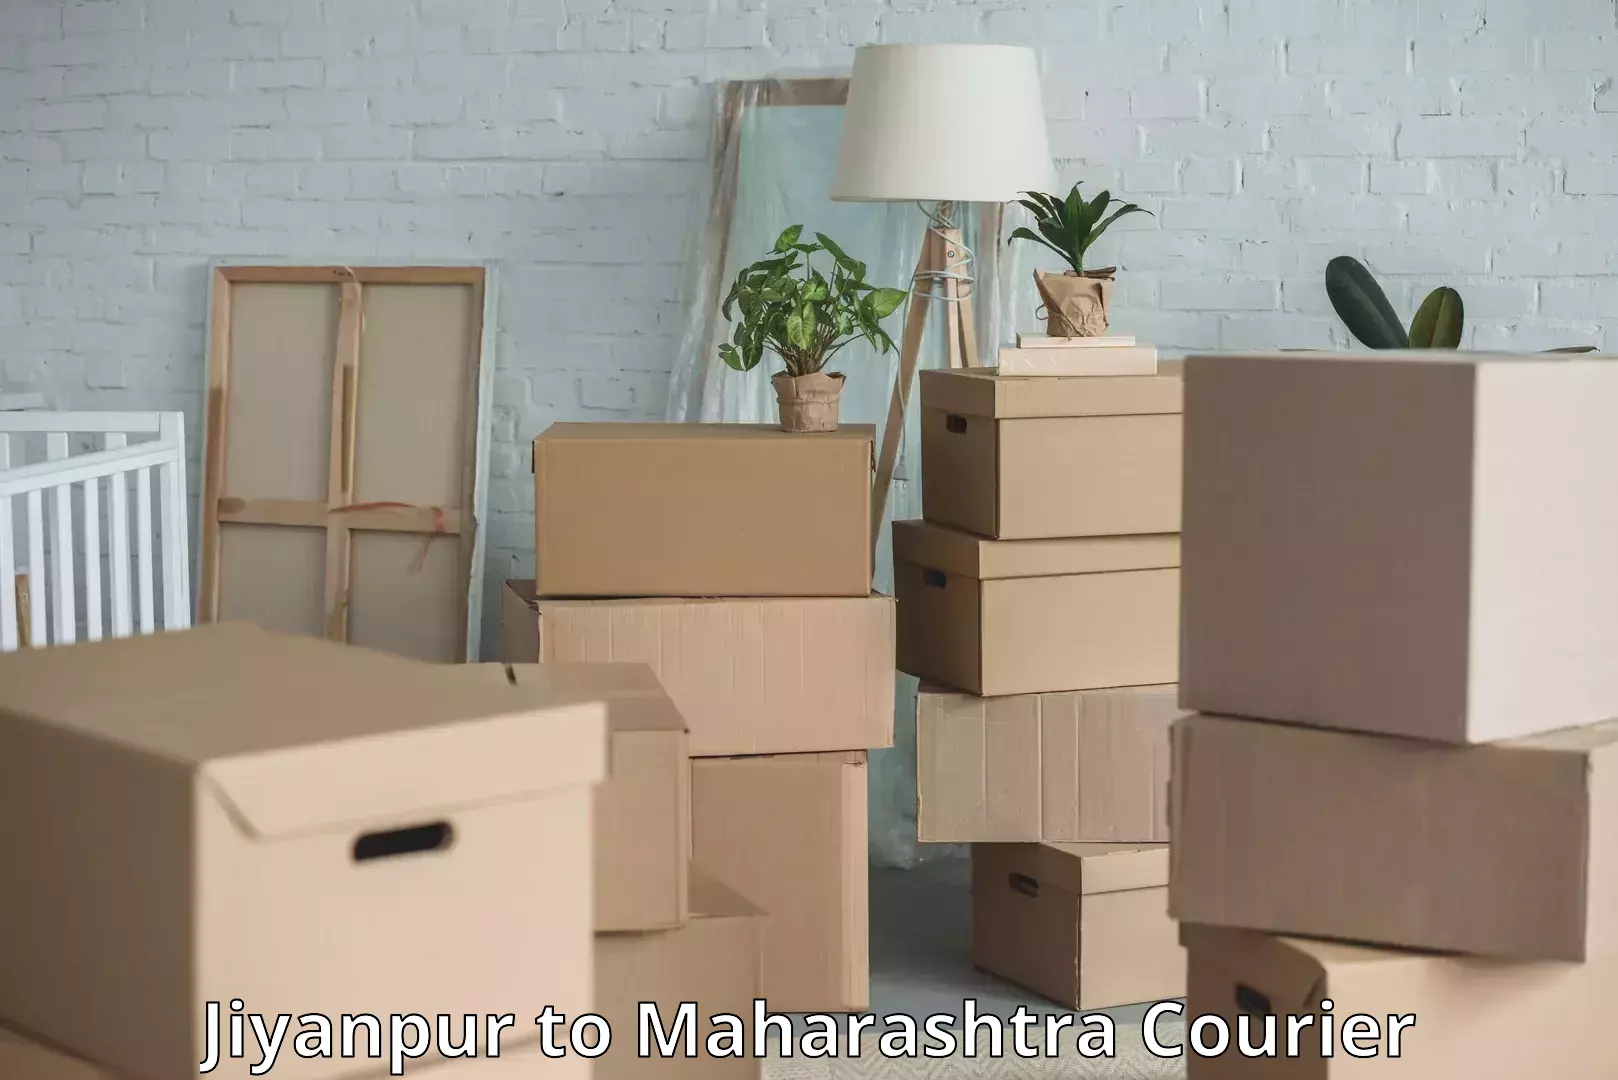 Baggage transport updates Jiyanpur to Maharashtra